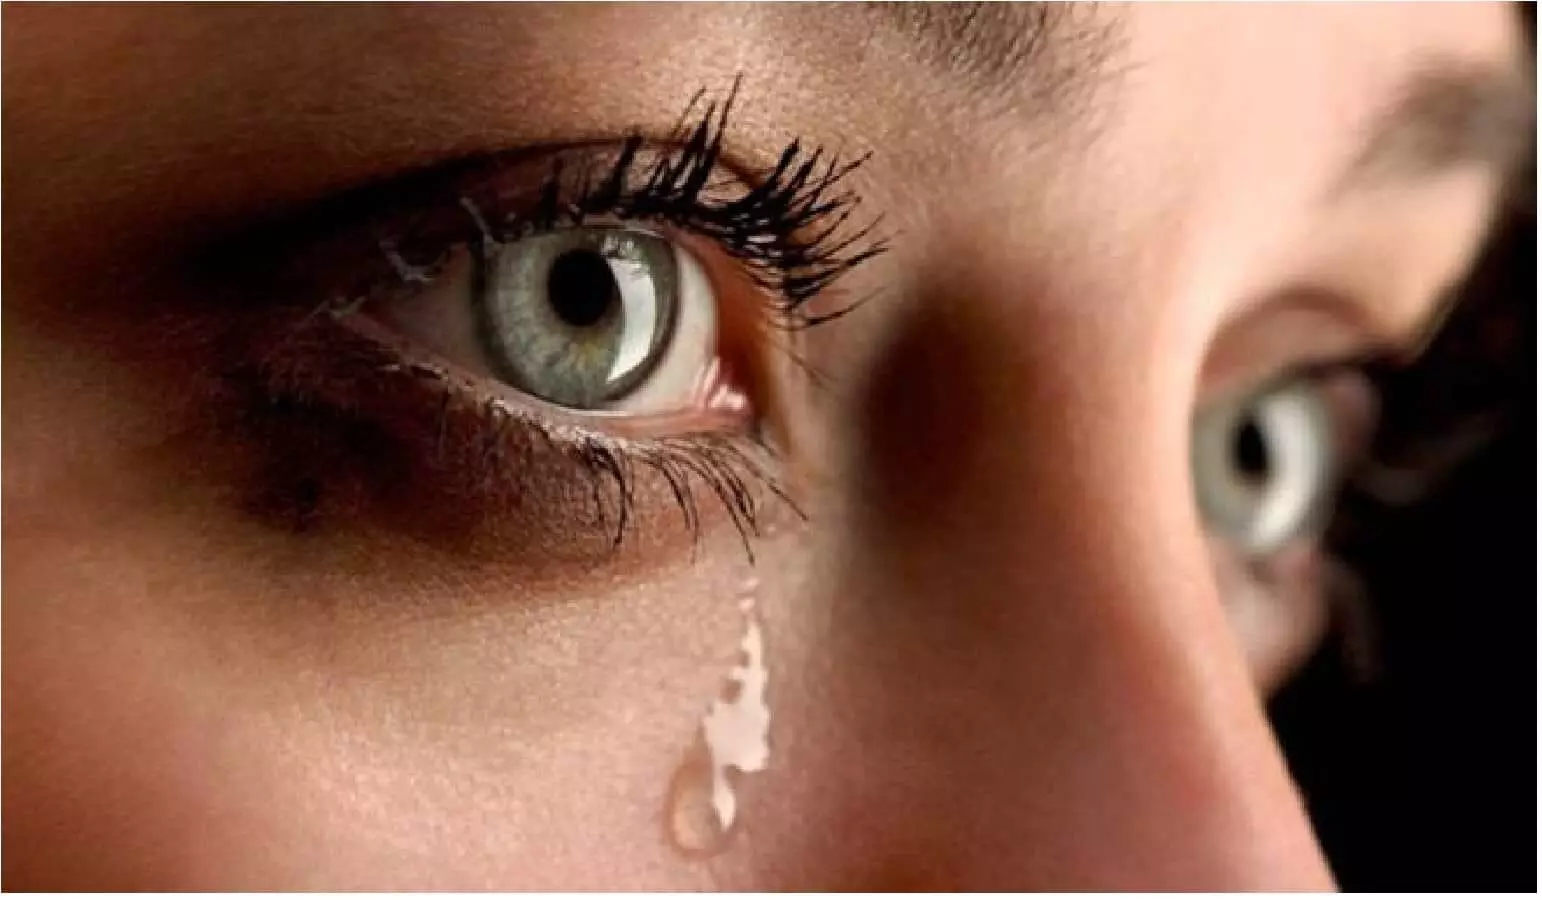 Knowledge: रोते समय क्यों निकलने लगते है आंसू, जानिए!